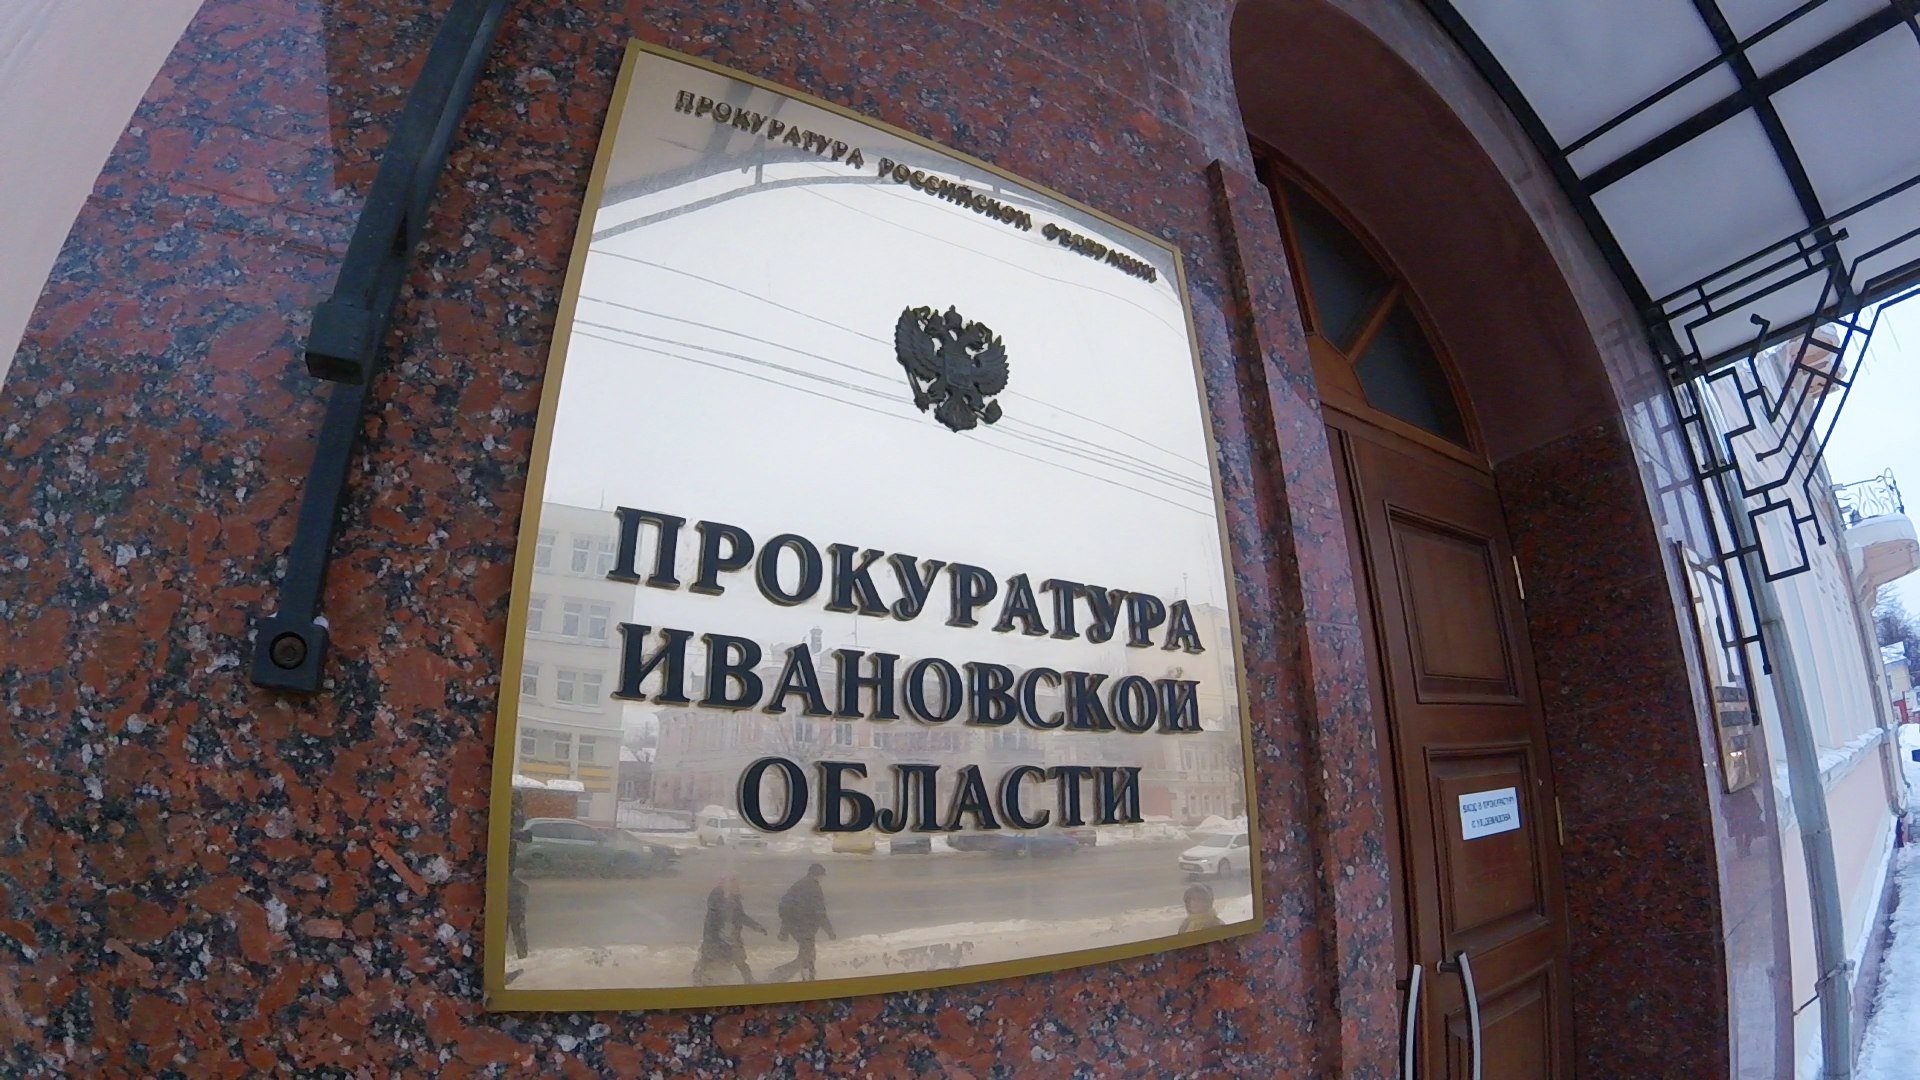 В прокуратуре Ивановской области организована горячая линия по вопросам мобилизации